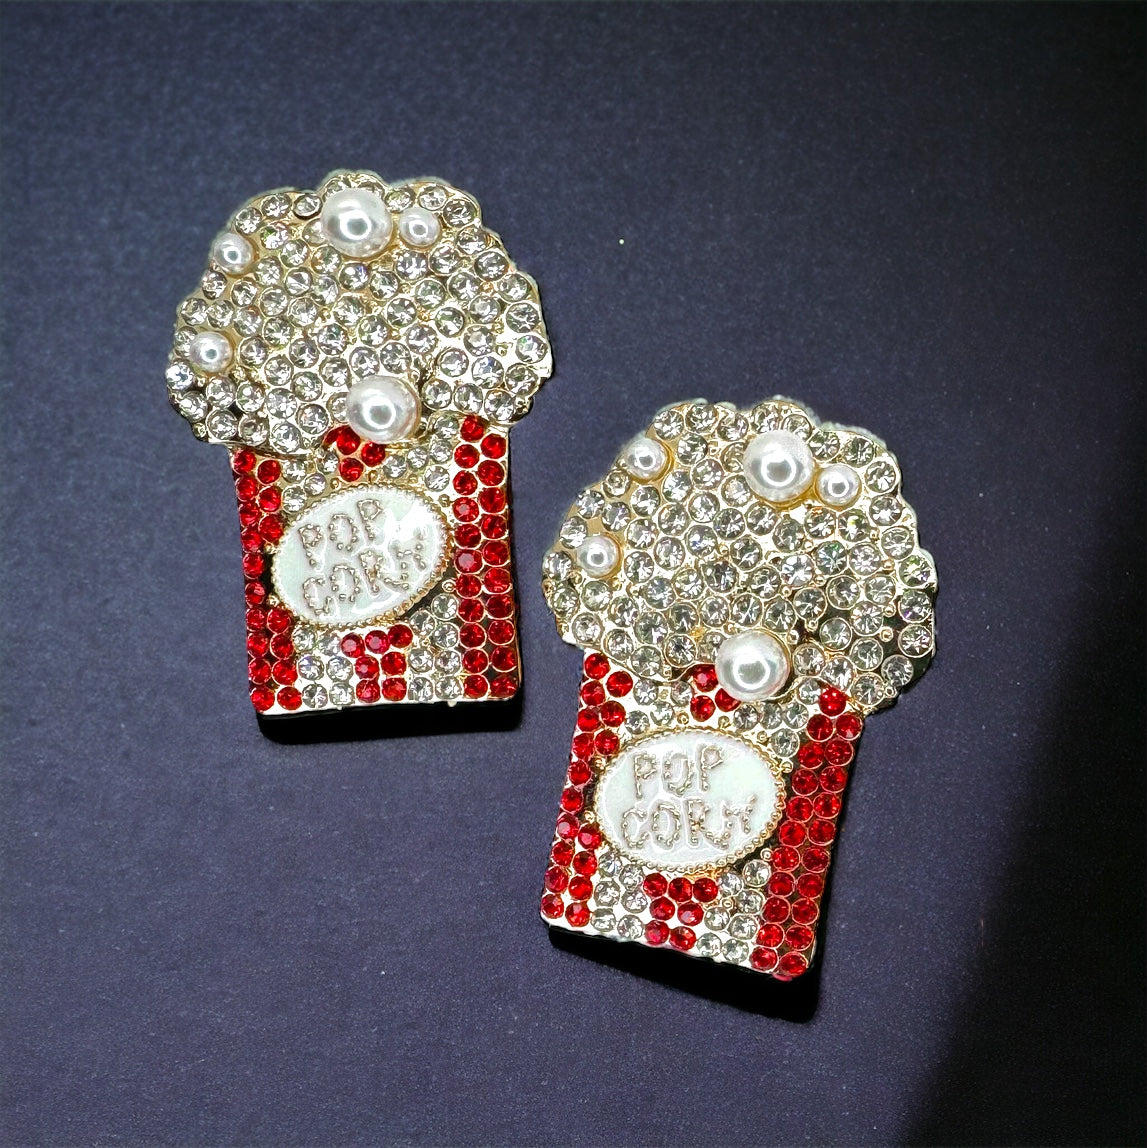 Rhinestone Popcorn Earrings - Butter Popcorn, Food Earrings, Popcorn Jewelry, Snack Earrings, Movie Theater